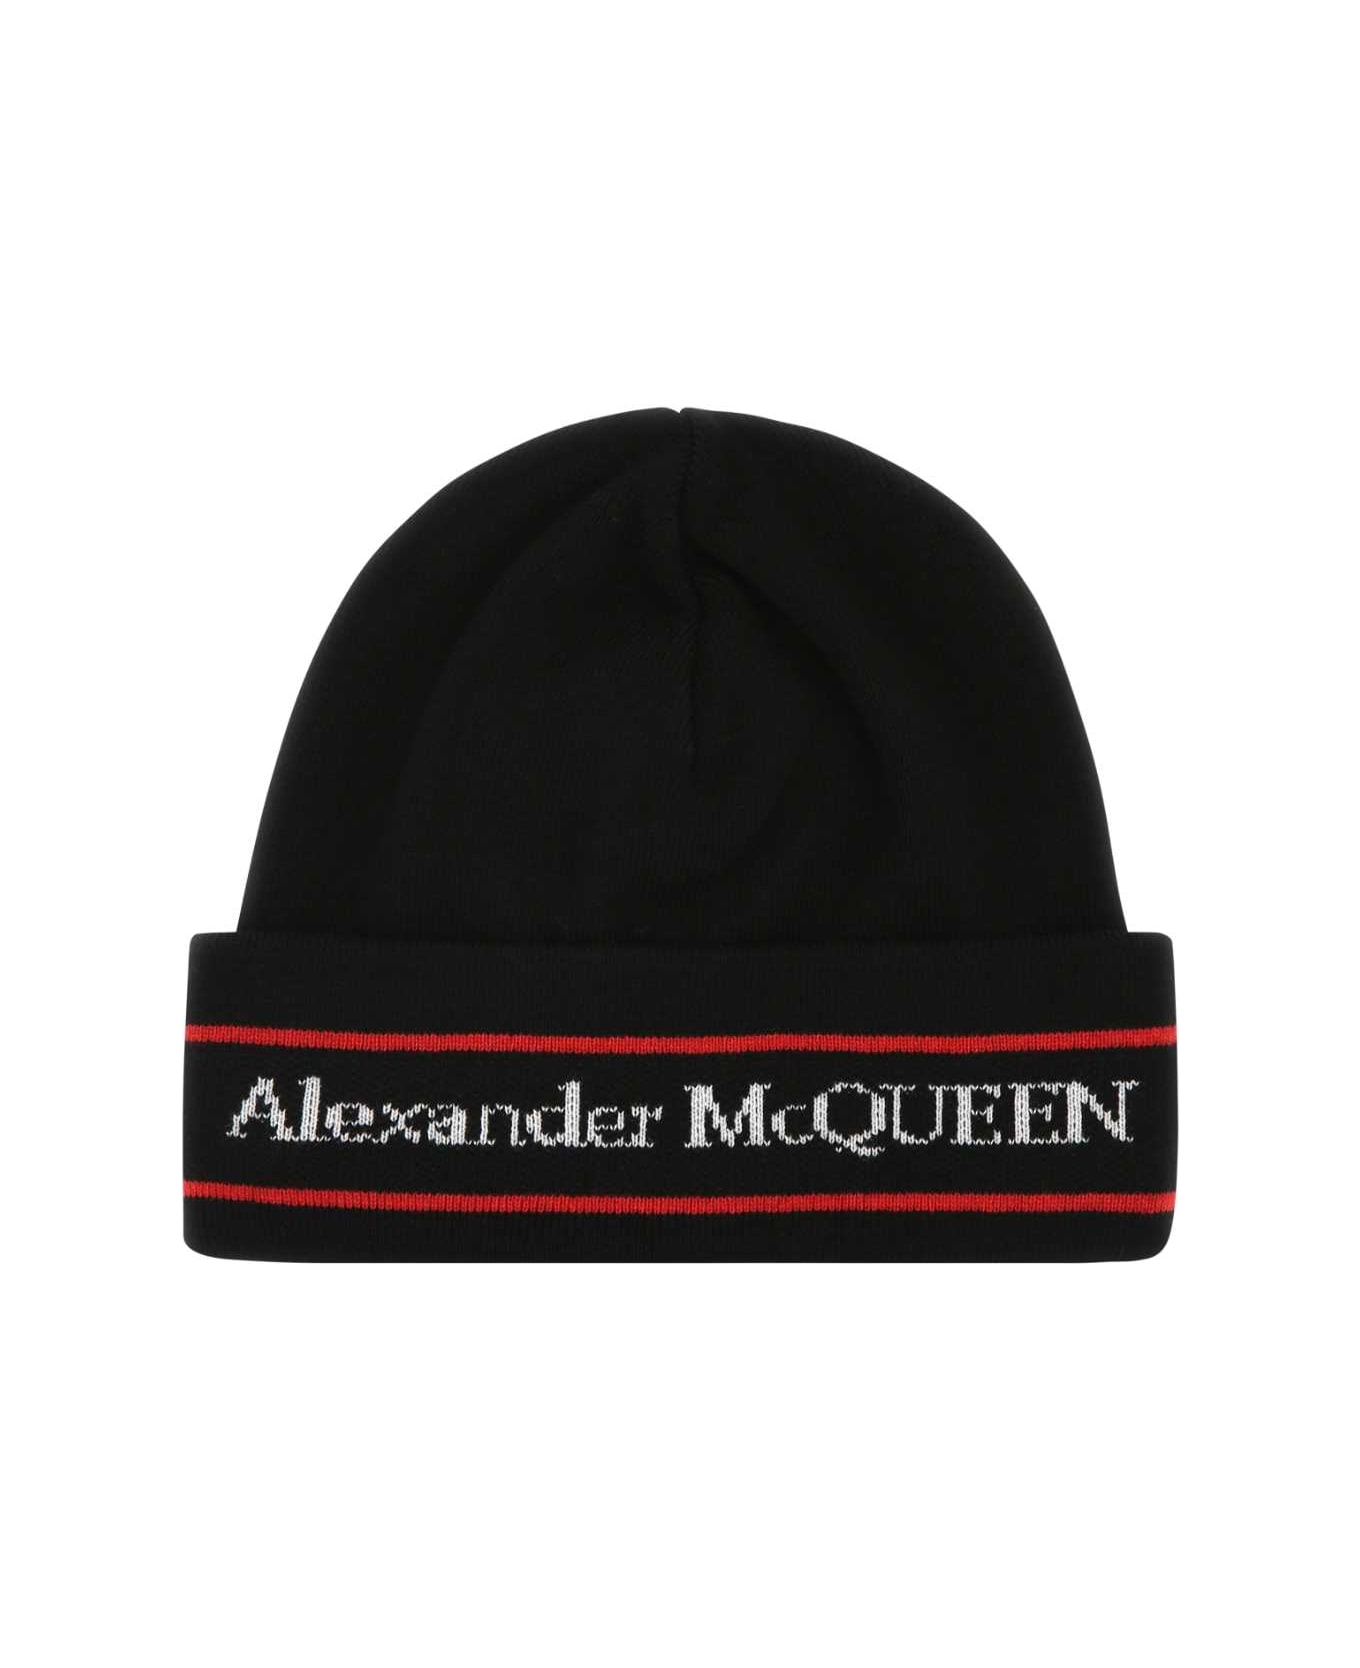 Alexander McQueen Black Cashmere Beanie Hat - 1074 デジタルアクセサリー